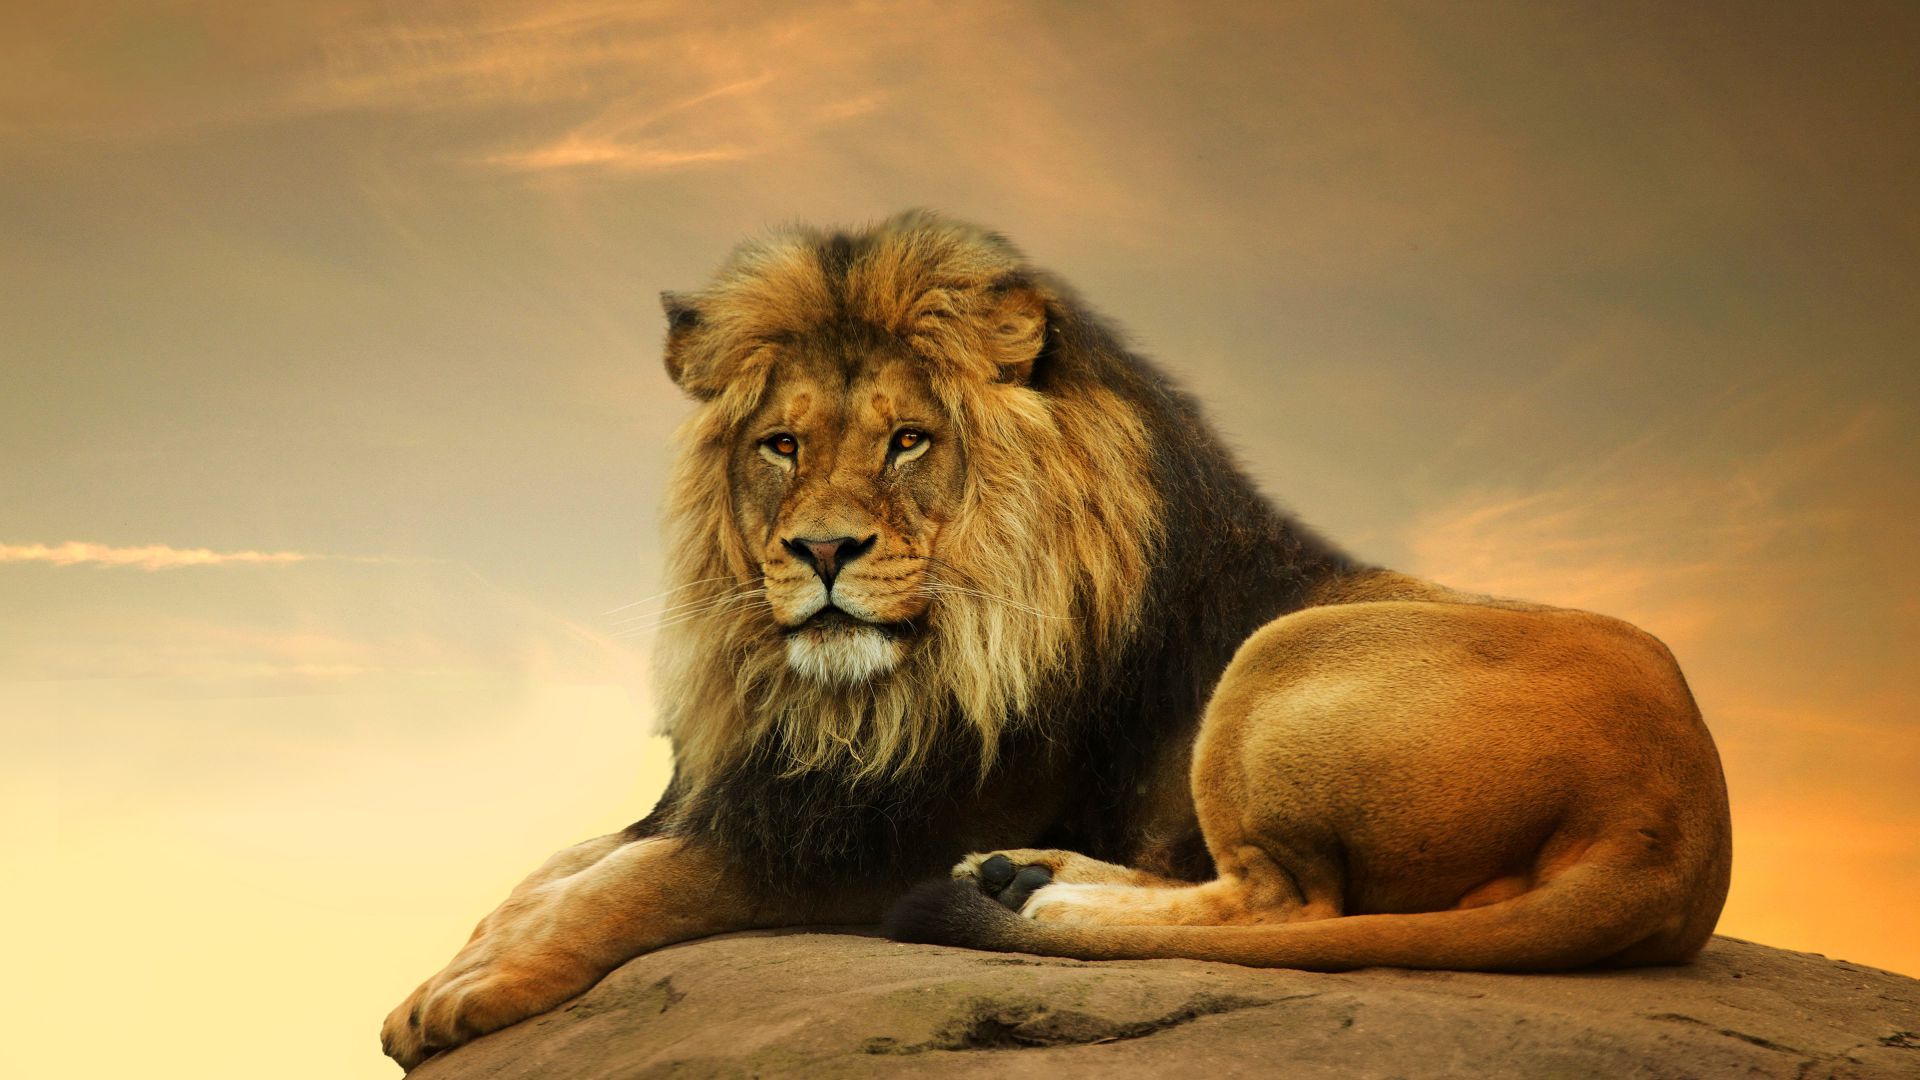 Wallpaper Lion, savanna, cute animals, Animals